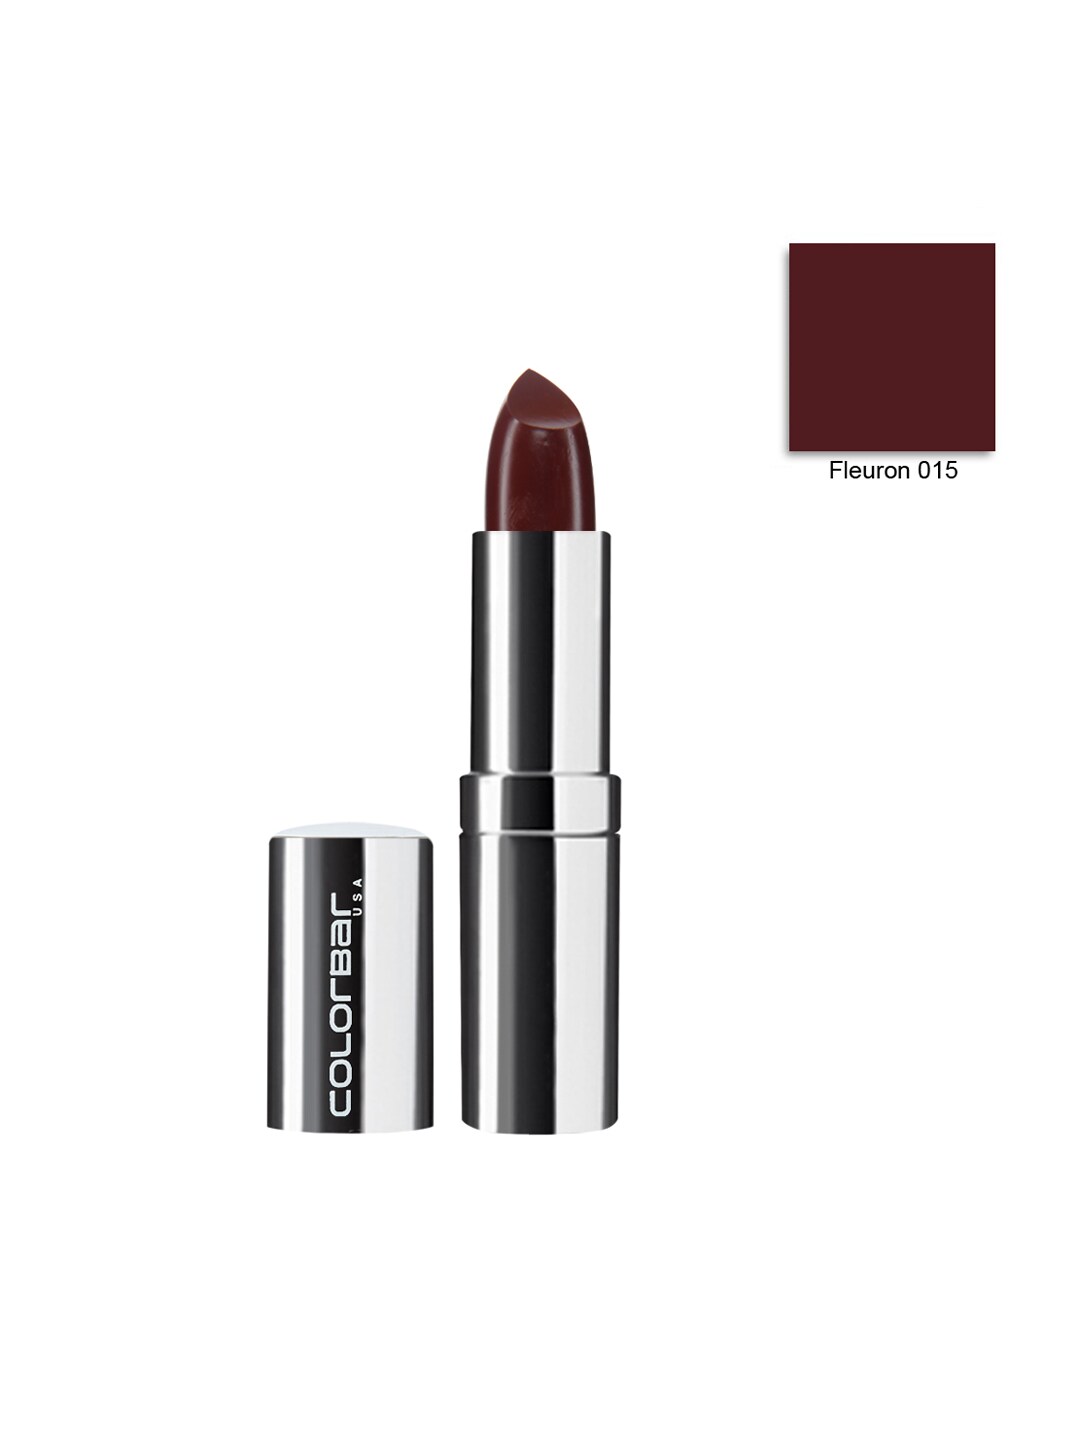 ColorBar Soft Touch Fleuron Lipstick 015